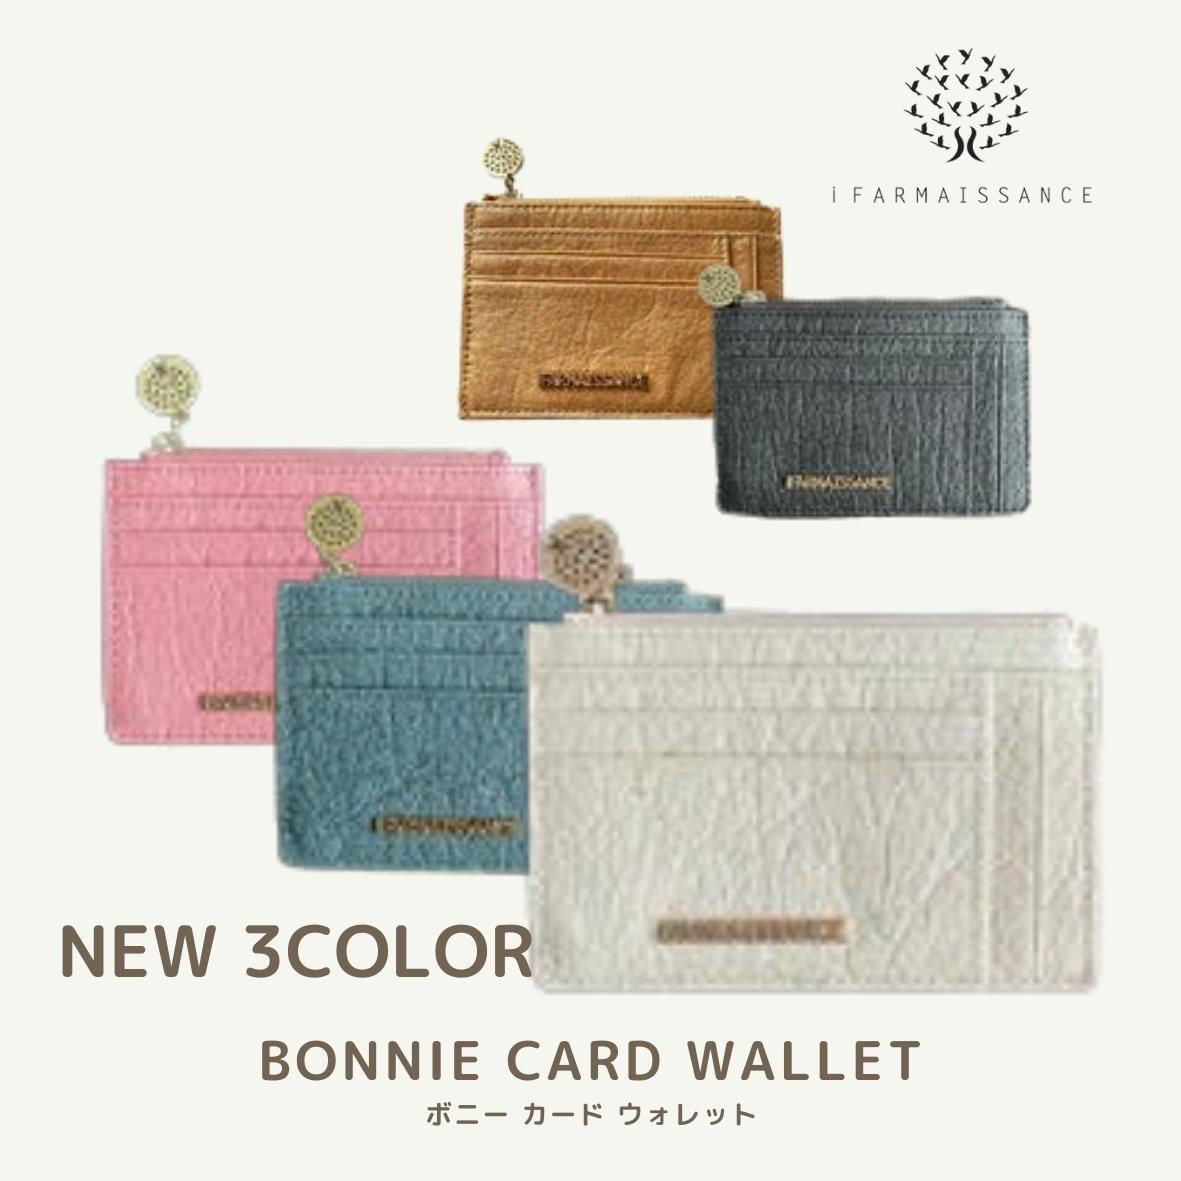 【パイナップルレザー】ボニー カード ウォレット～BONNIE CARD WALLET バリエーション 5色